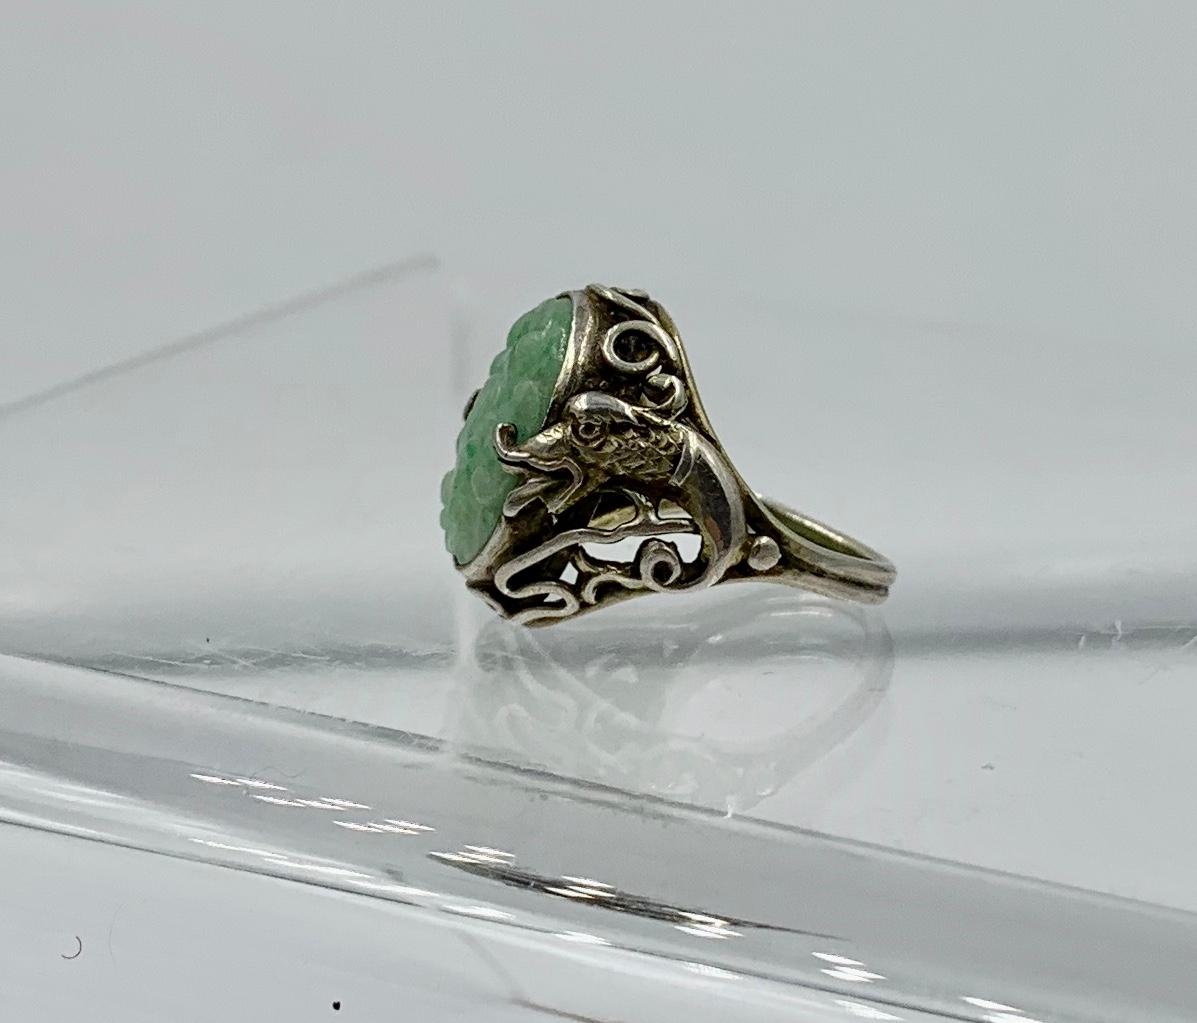 Dies ist ein wunderbarer und seltener Ring mit einer zentralen geschnitzten Jade in einem Blumenmotiv.  Die silberne Fassung für die Jade ist außergewöhnlich und zeigt ein fantastisches Drachenmotiv.  Die Drachen befinden sich auf beiden Seiten der